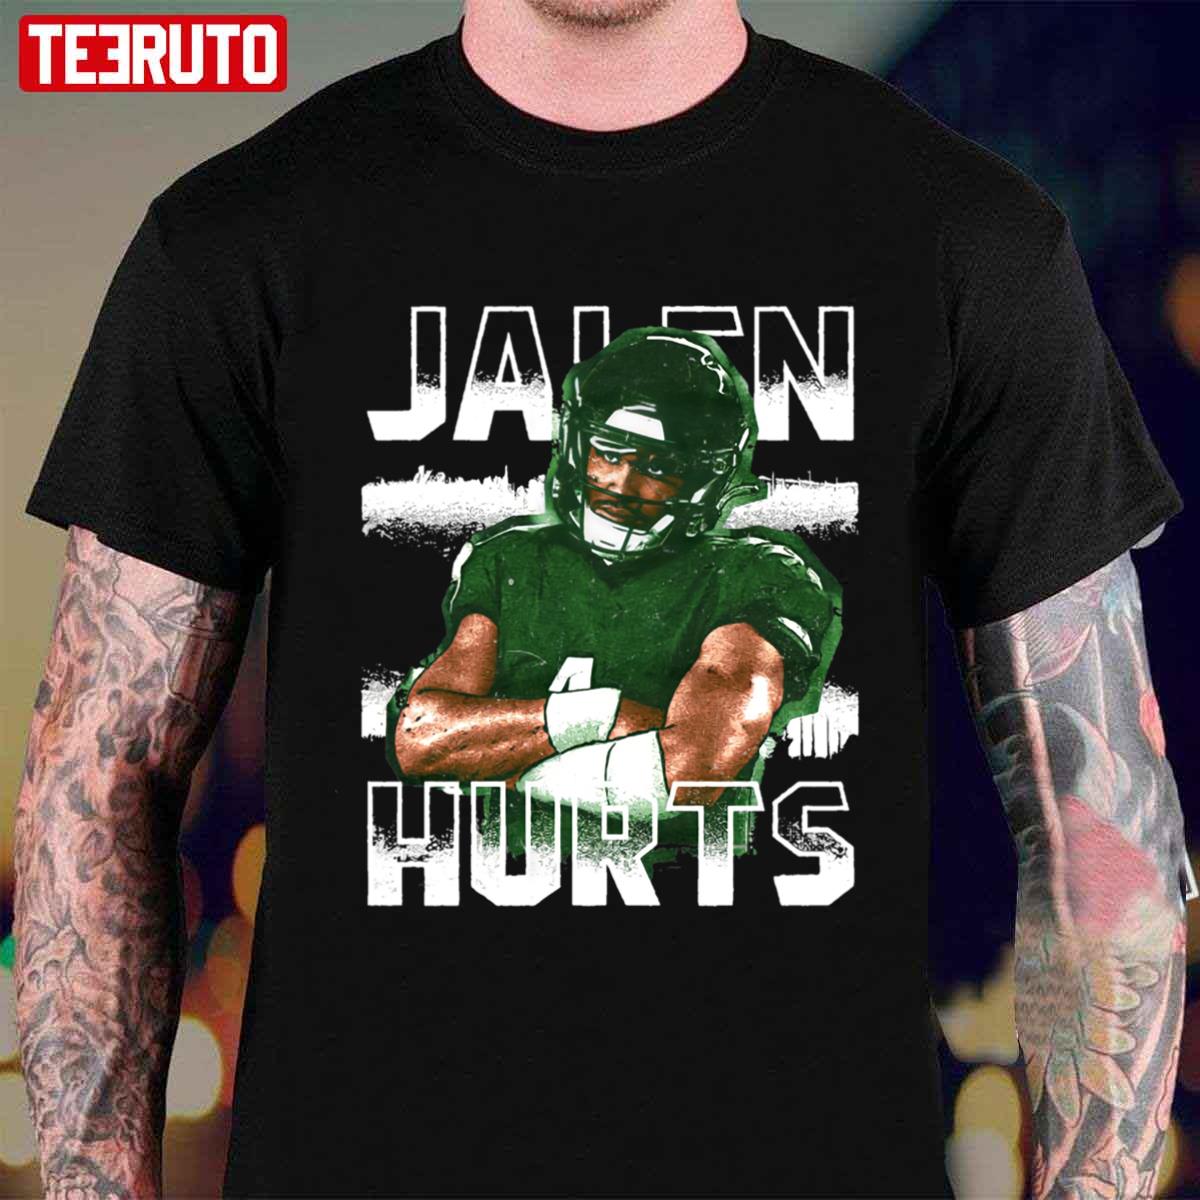 Jalen Hurts Shirt, Jalen Hurts Merch Shirt, Football Shirt, Jalen